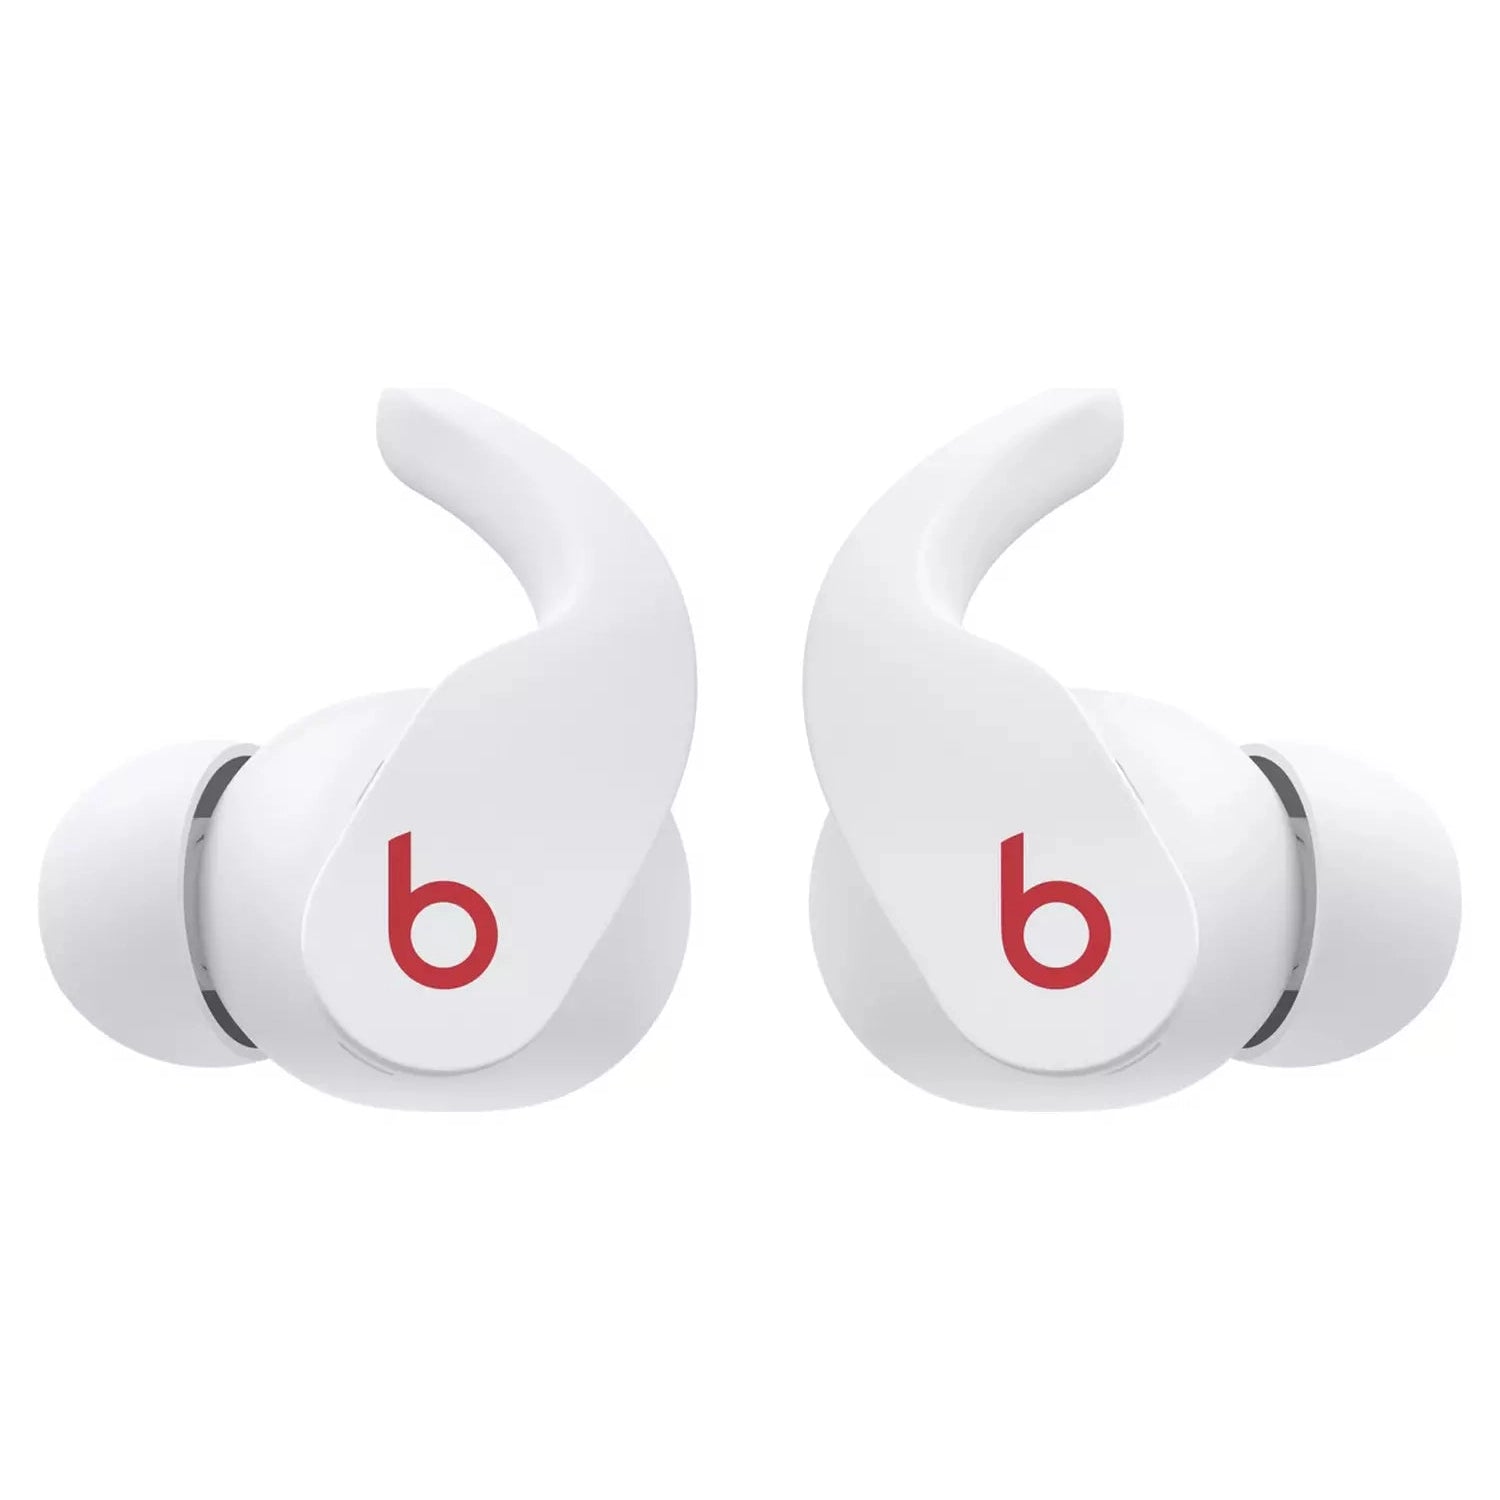 Beats Fit Pro True Wireless In-Ear Earbuds - White - Refurbished Good